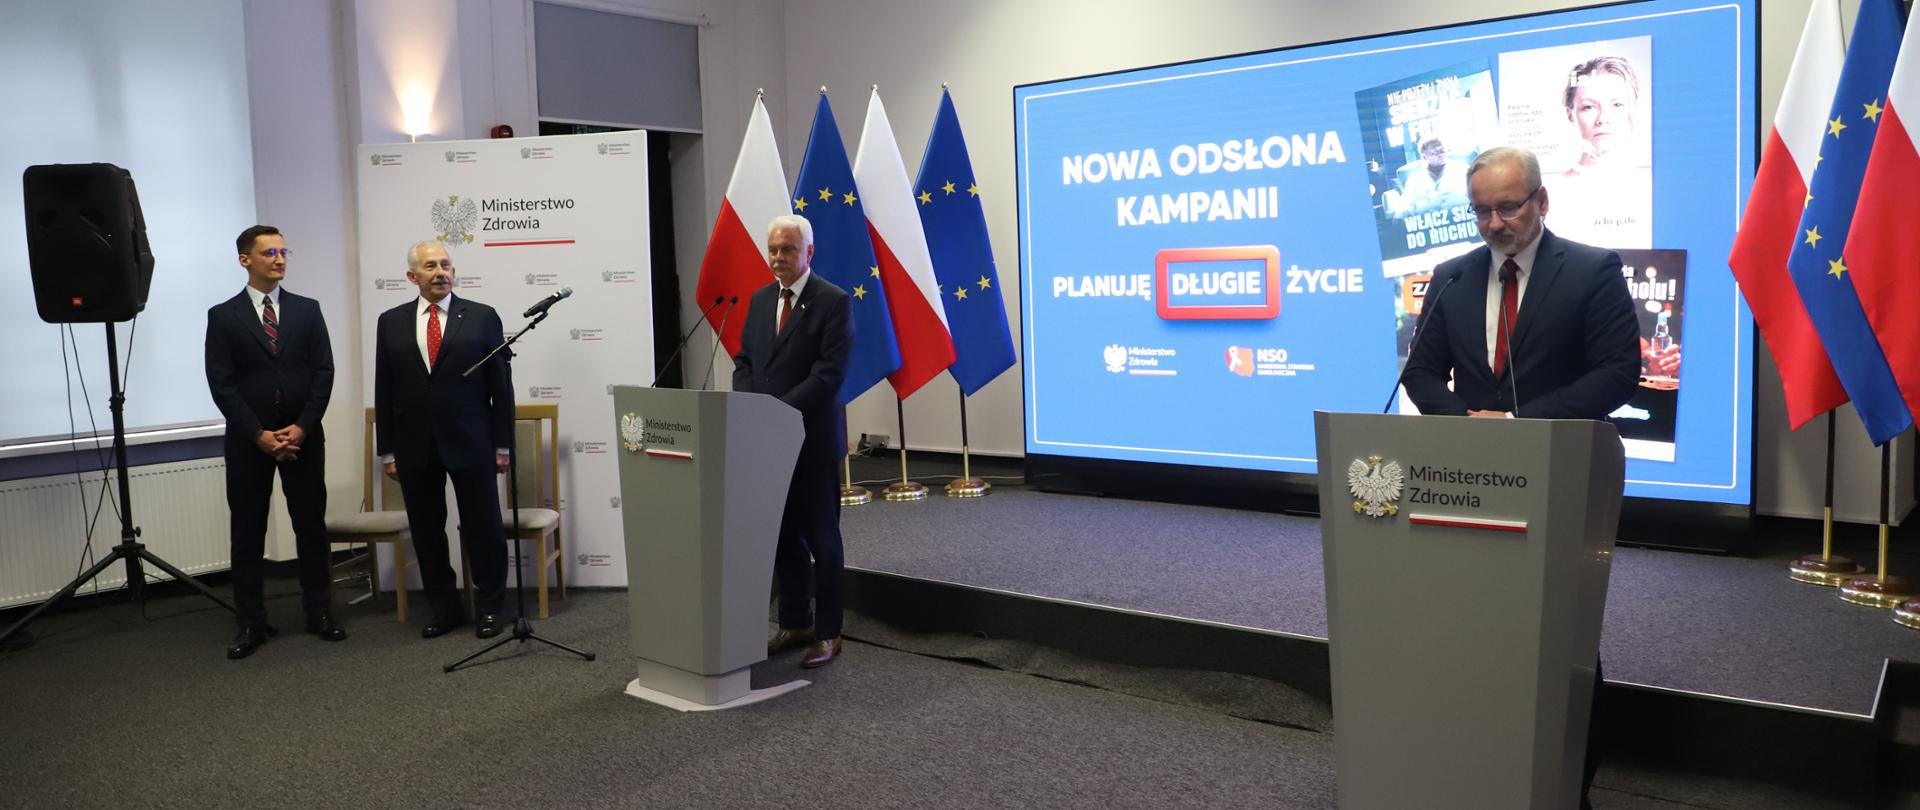 Na zdj. minister Adam Niedzielski i wiceminister Waldemar Kraska podczas nowego otwarcia kampanii Planuję Długie Życie. 